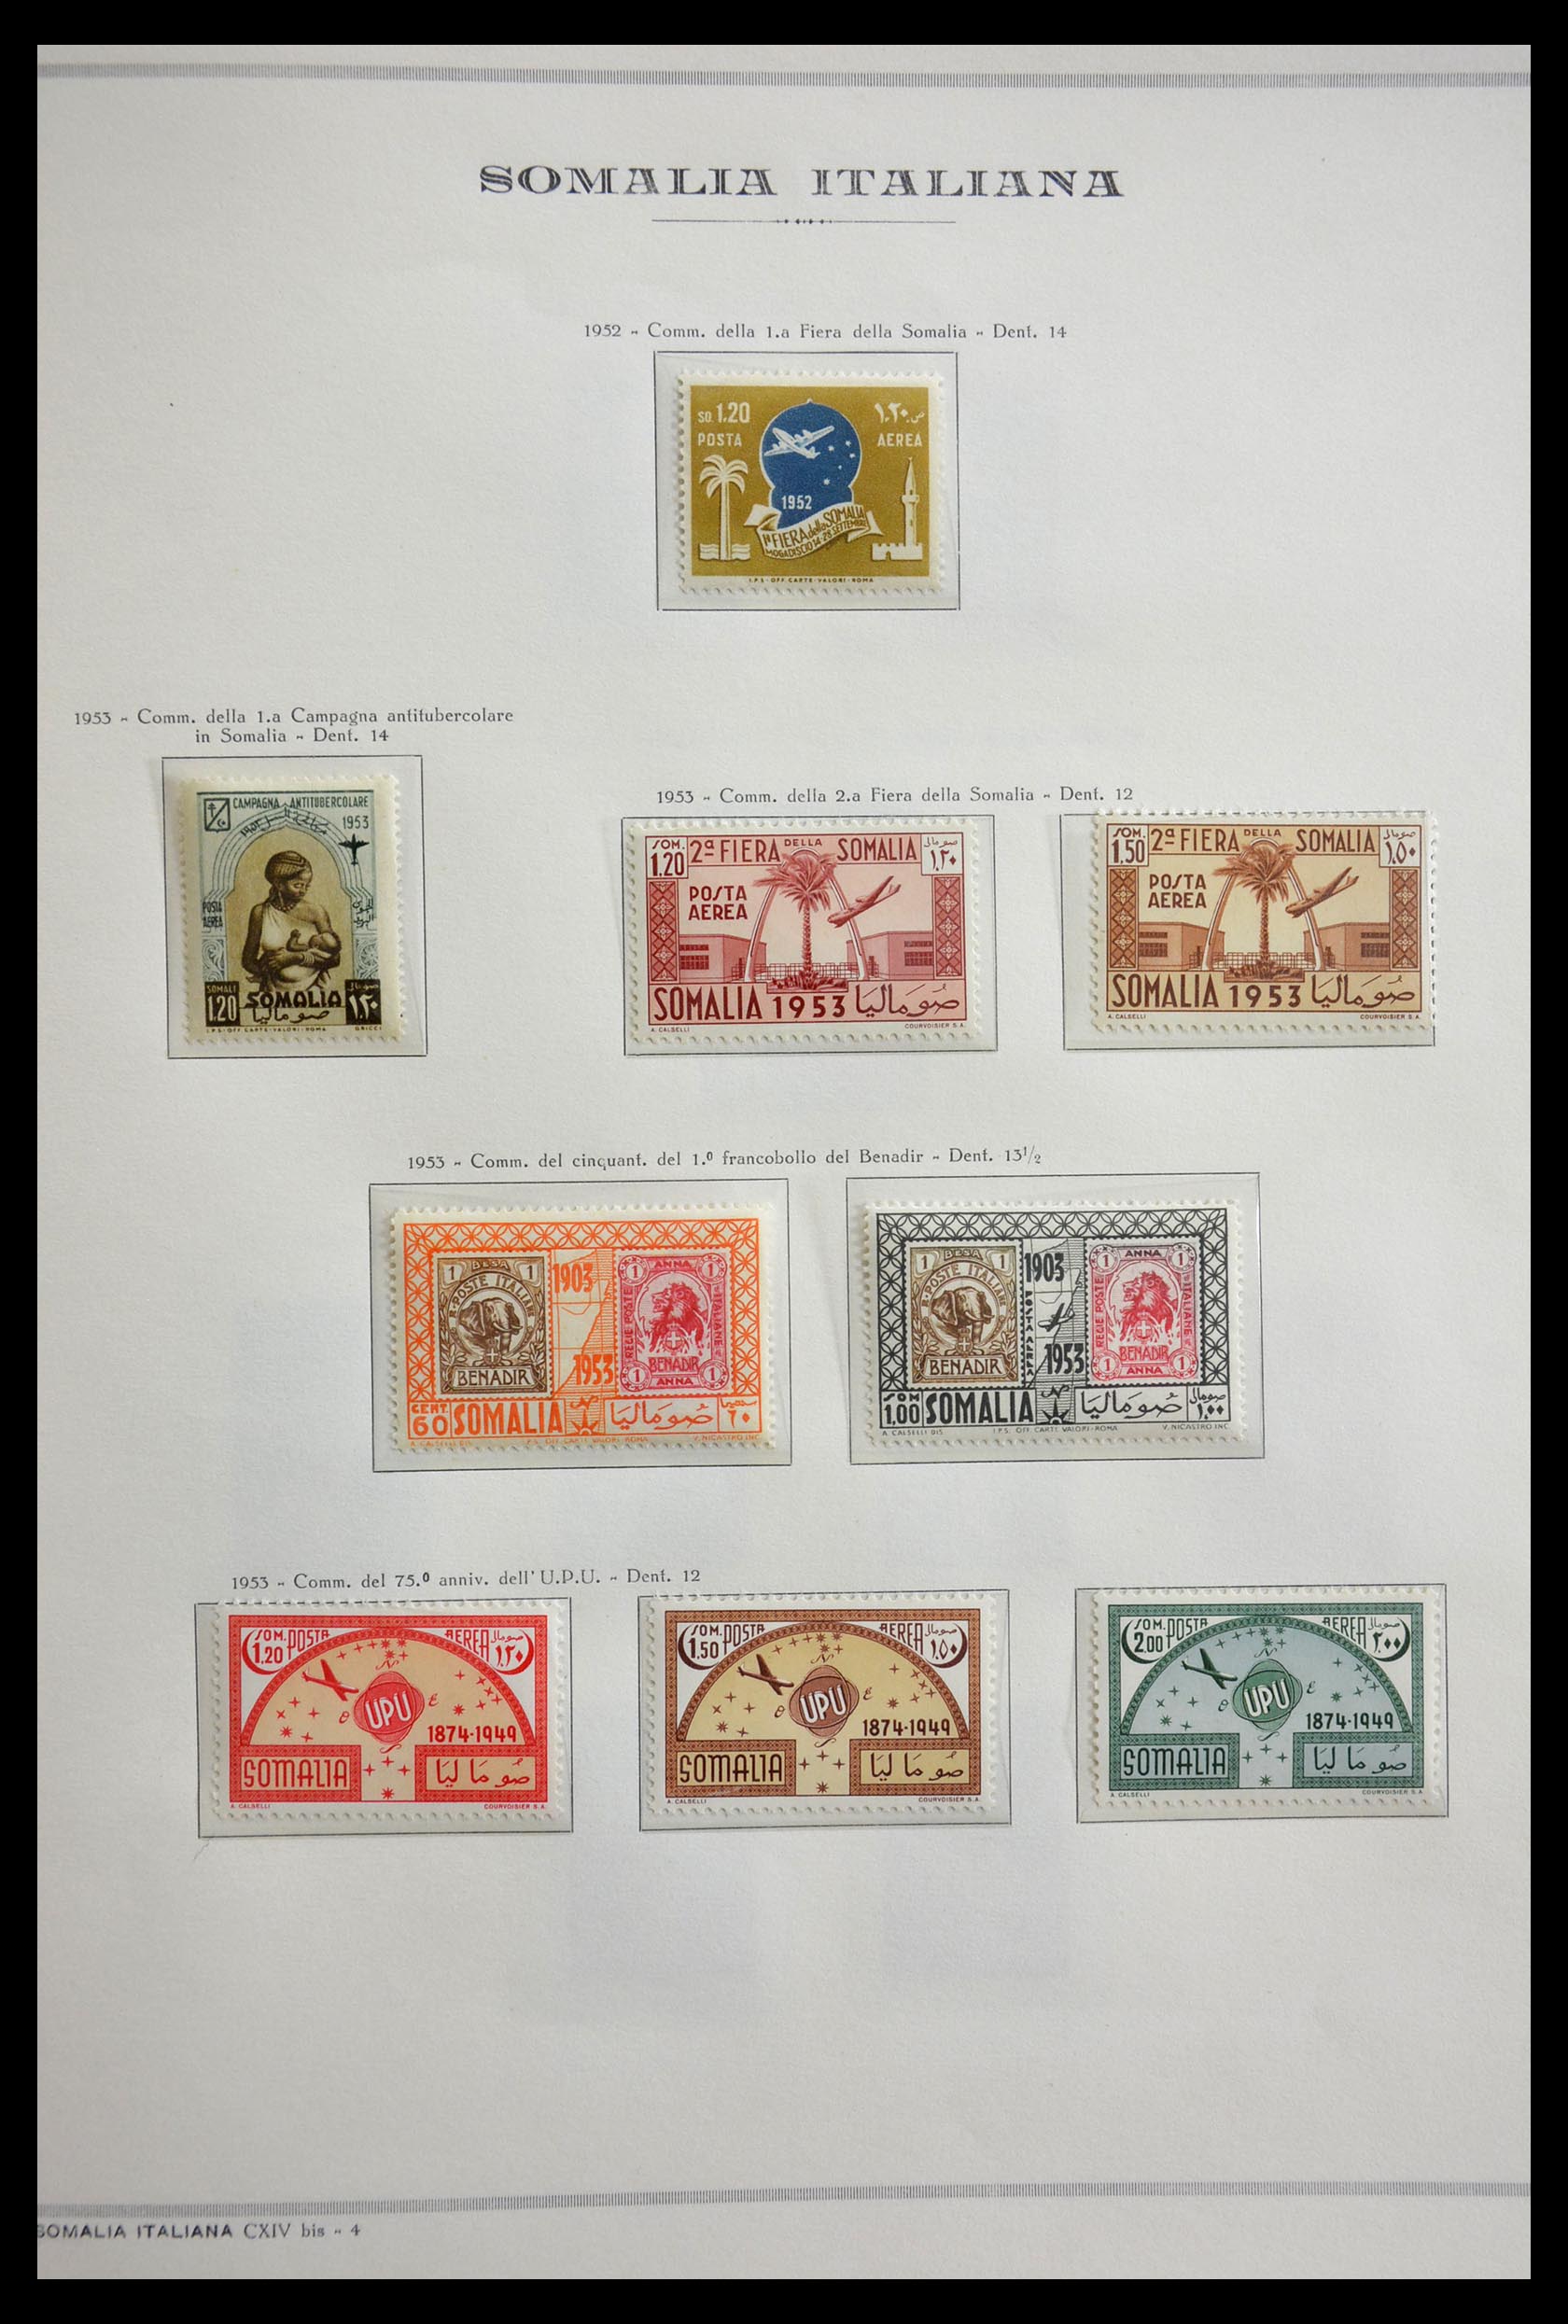 29430 009 - 29430 Italiaans Somalië 1950-1965.